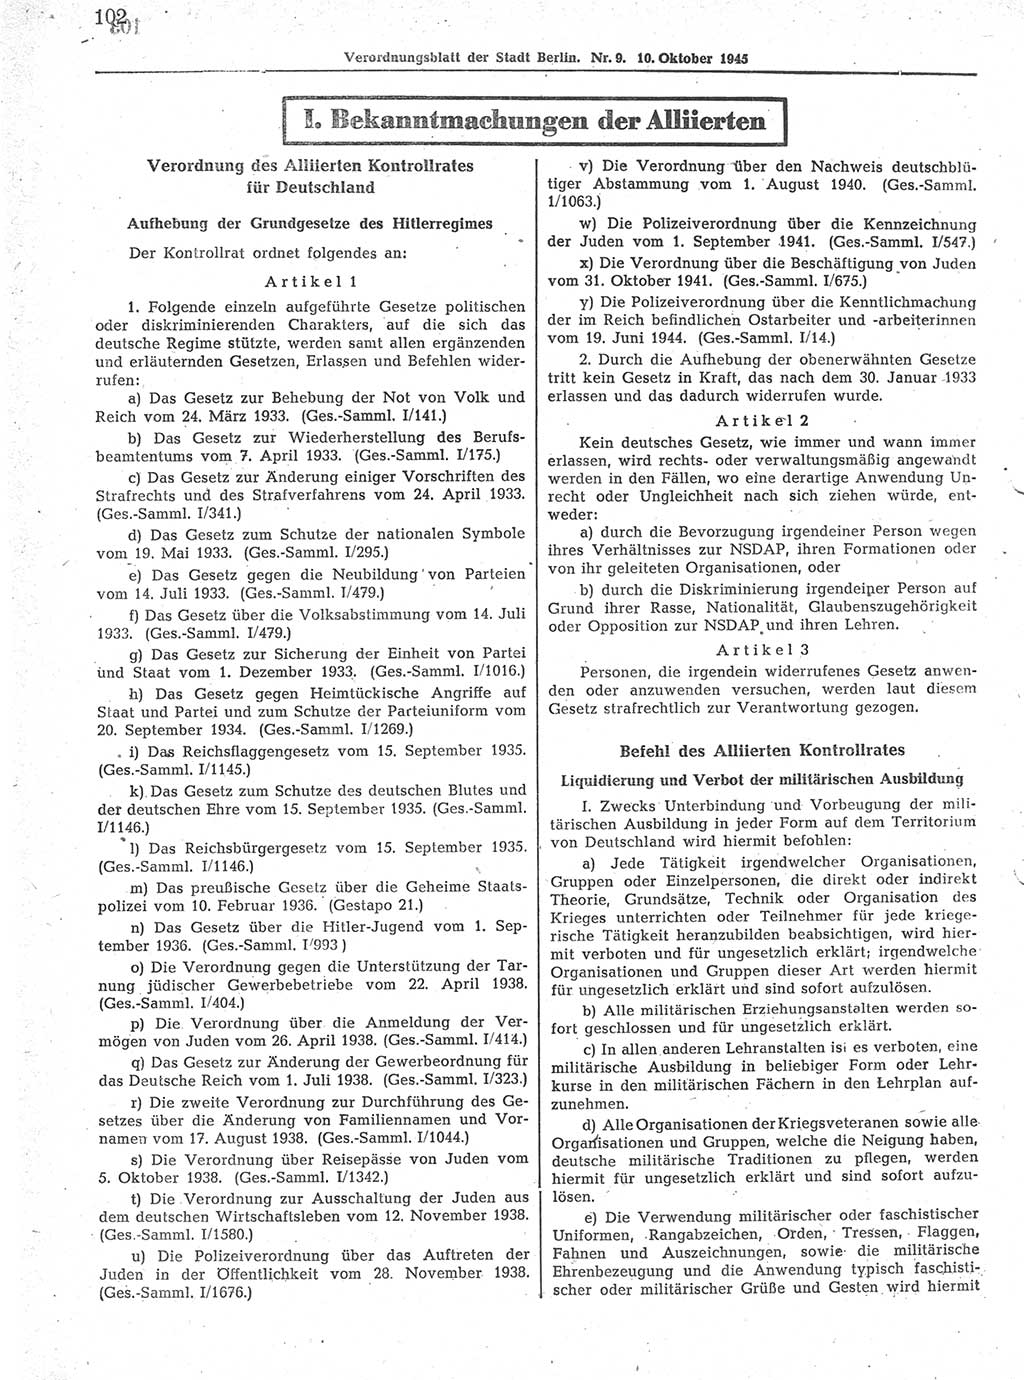 Verordnungsblatt (VOBl.) der Stadt Berlin 1945, Seite 102 (VOBl. Bln. 1945, S. 102)